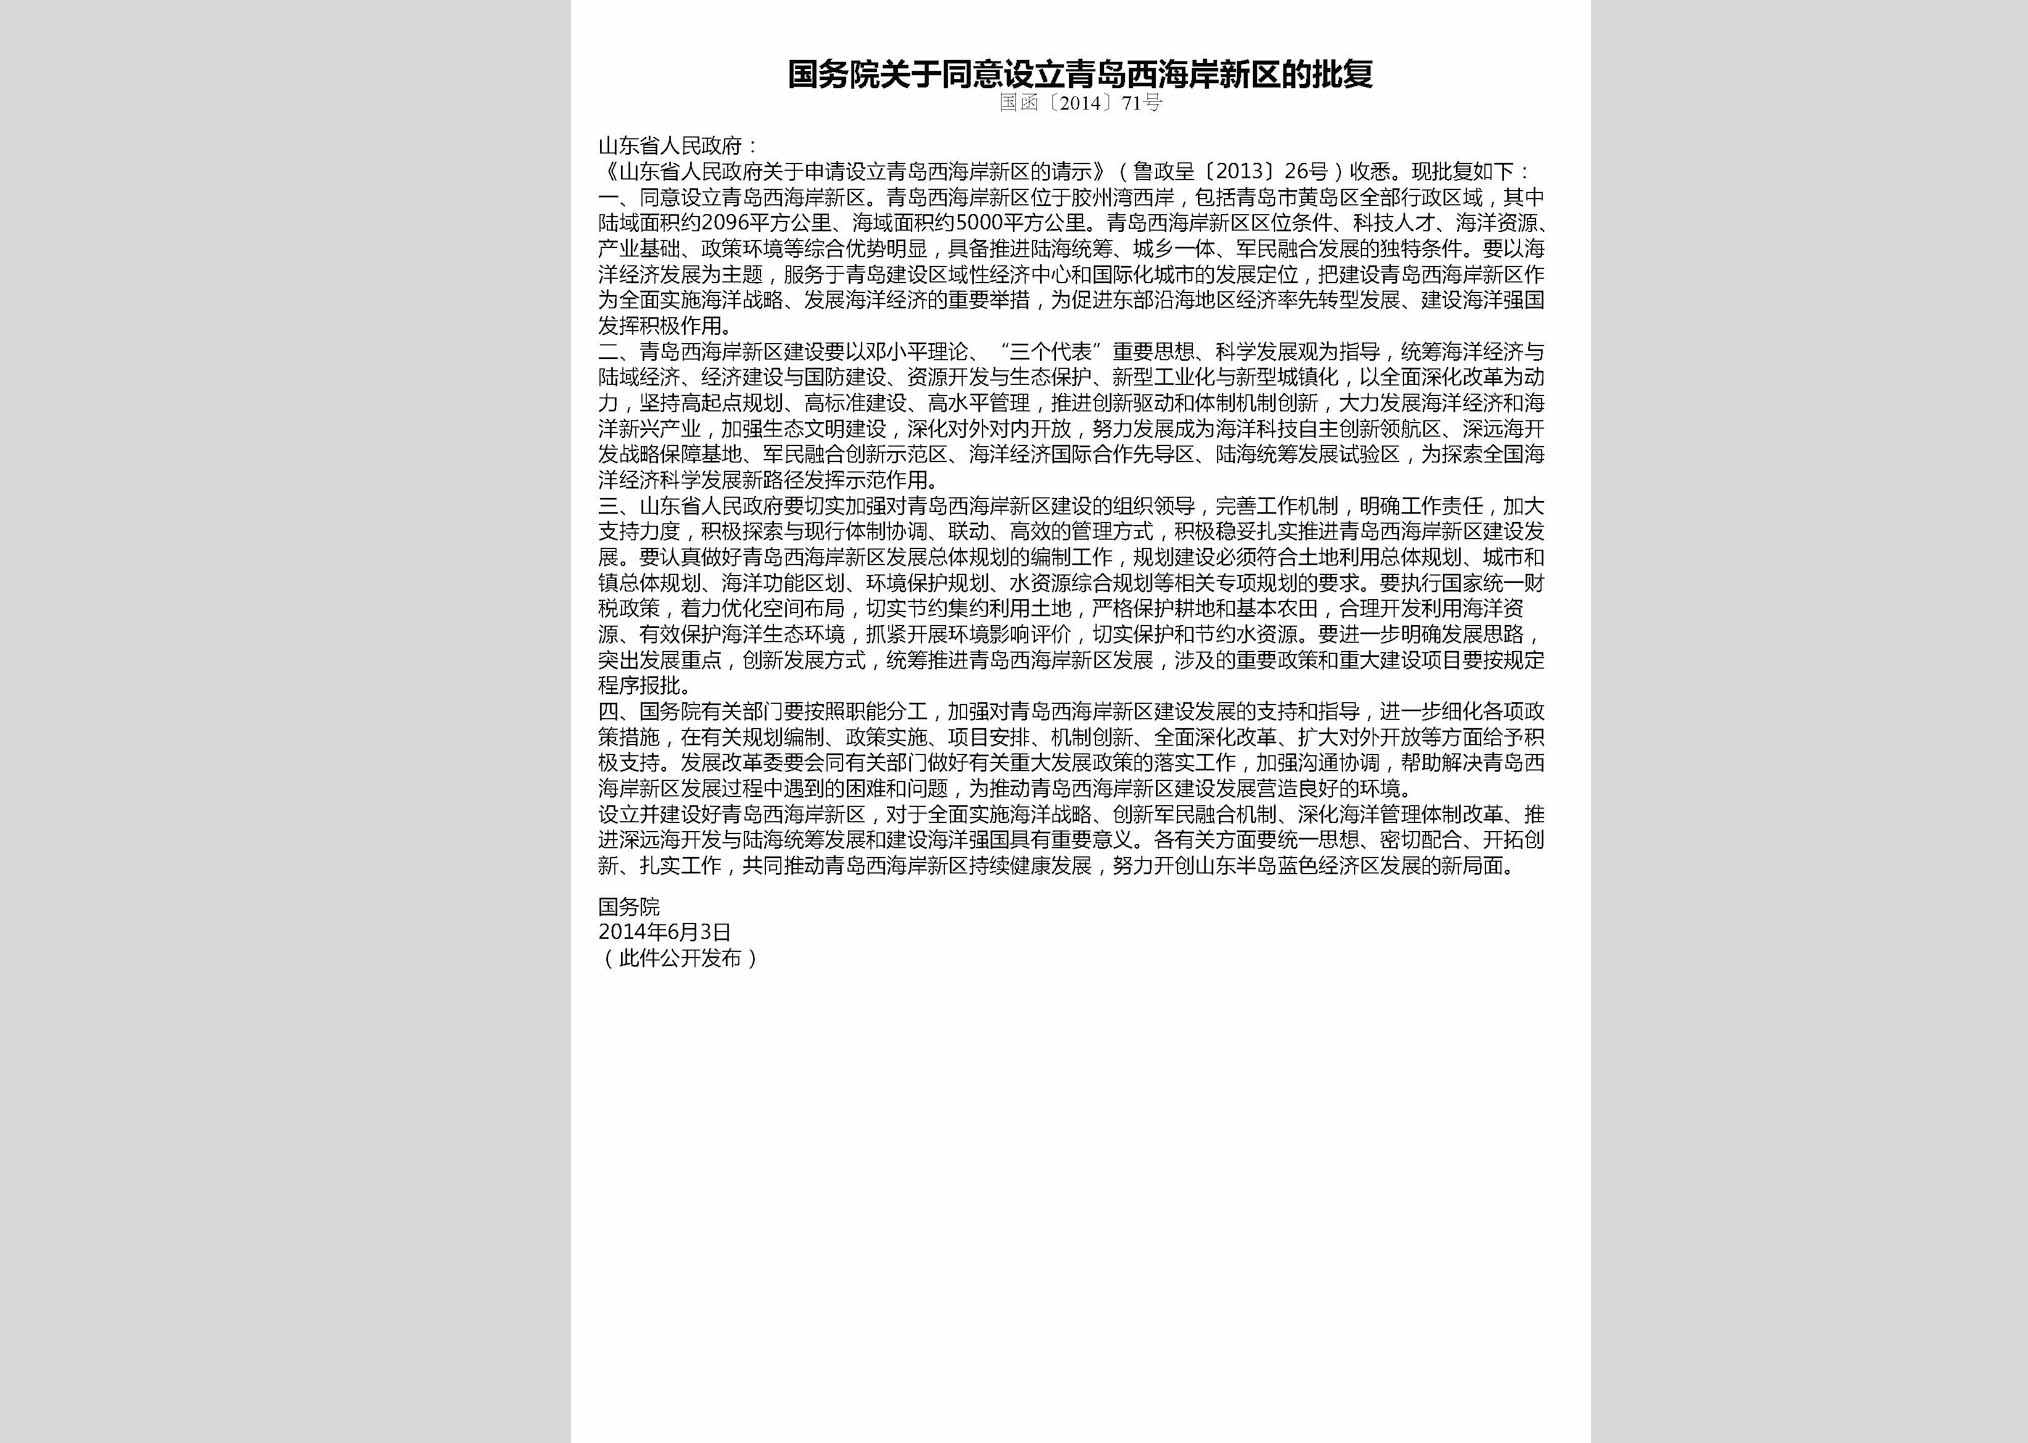 国函[2014]71号：国务院关于同意设立青岛西海岸新区的批复